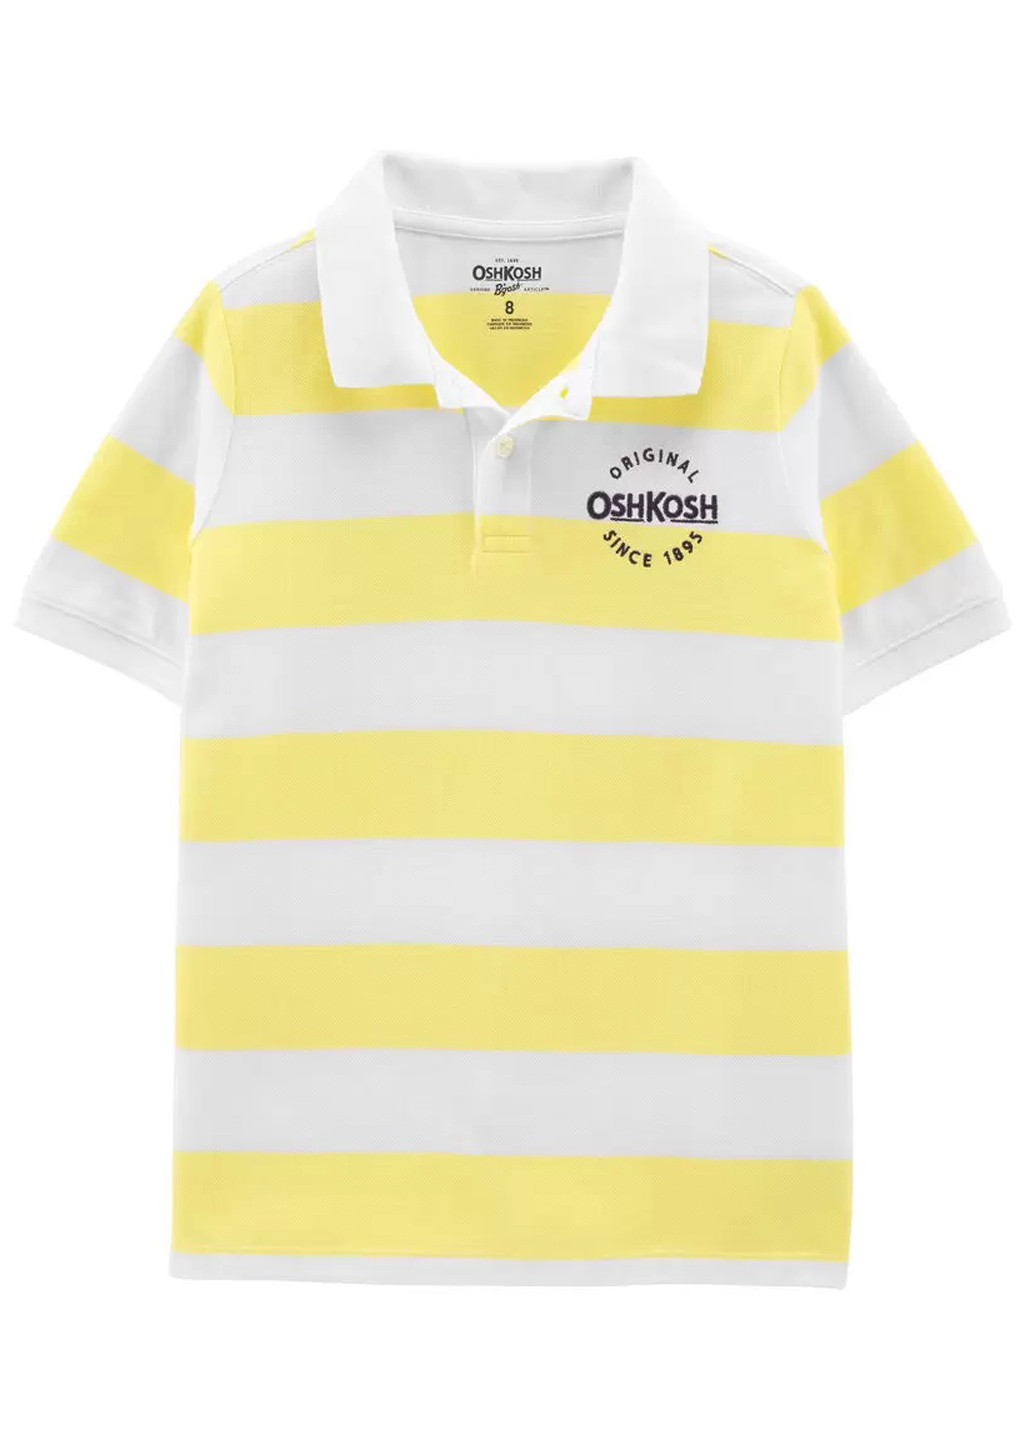 Желтая детская футболка-поло для мальчика OshKosh в полоску